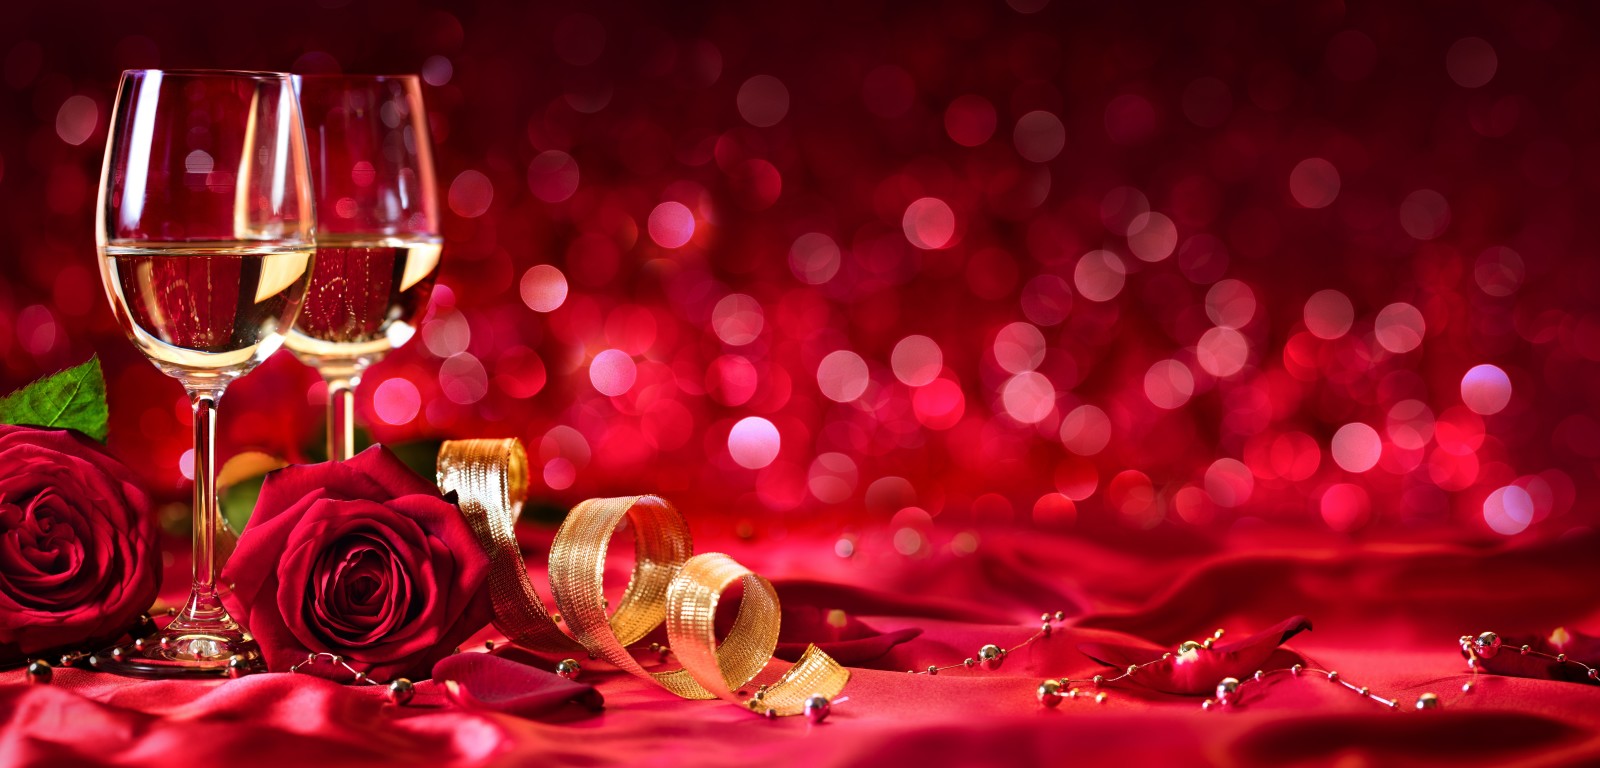 hari Valentine, mawar, tape, anggur, kacamata, kelopak, sampanye, tunas